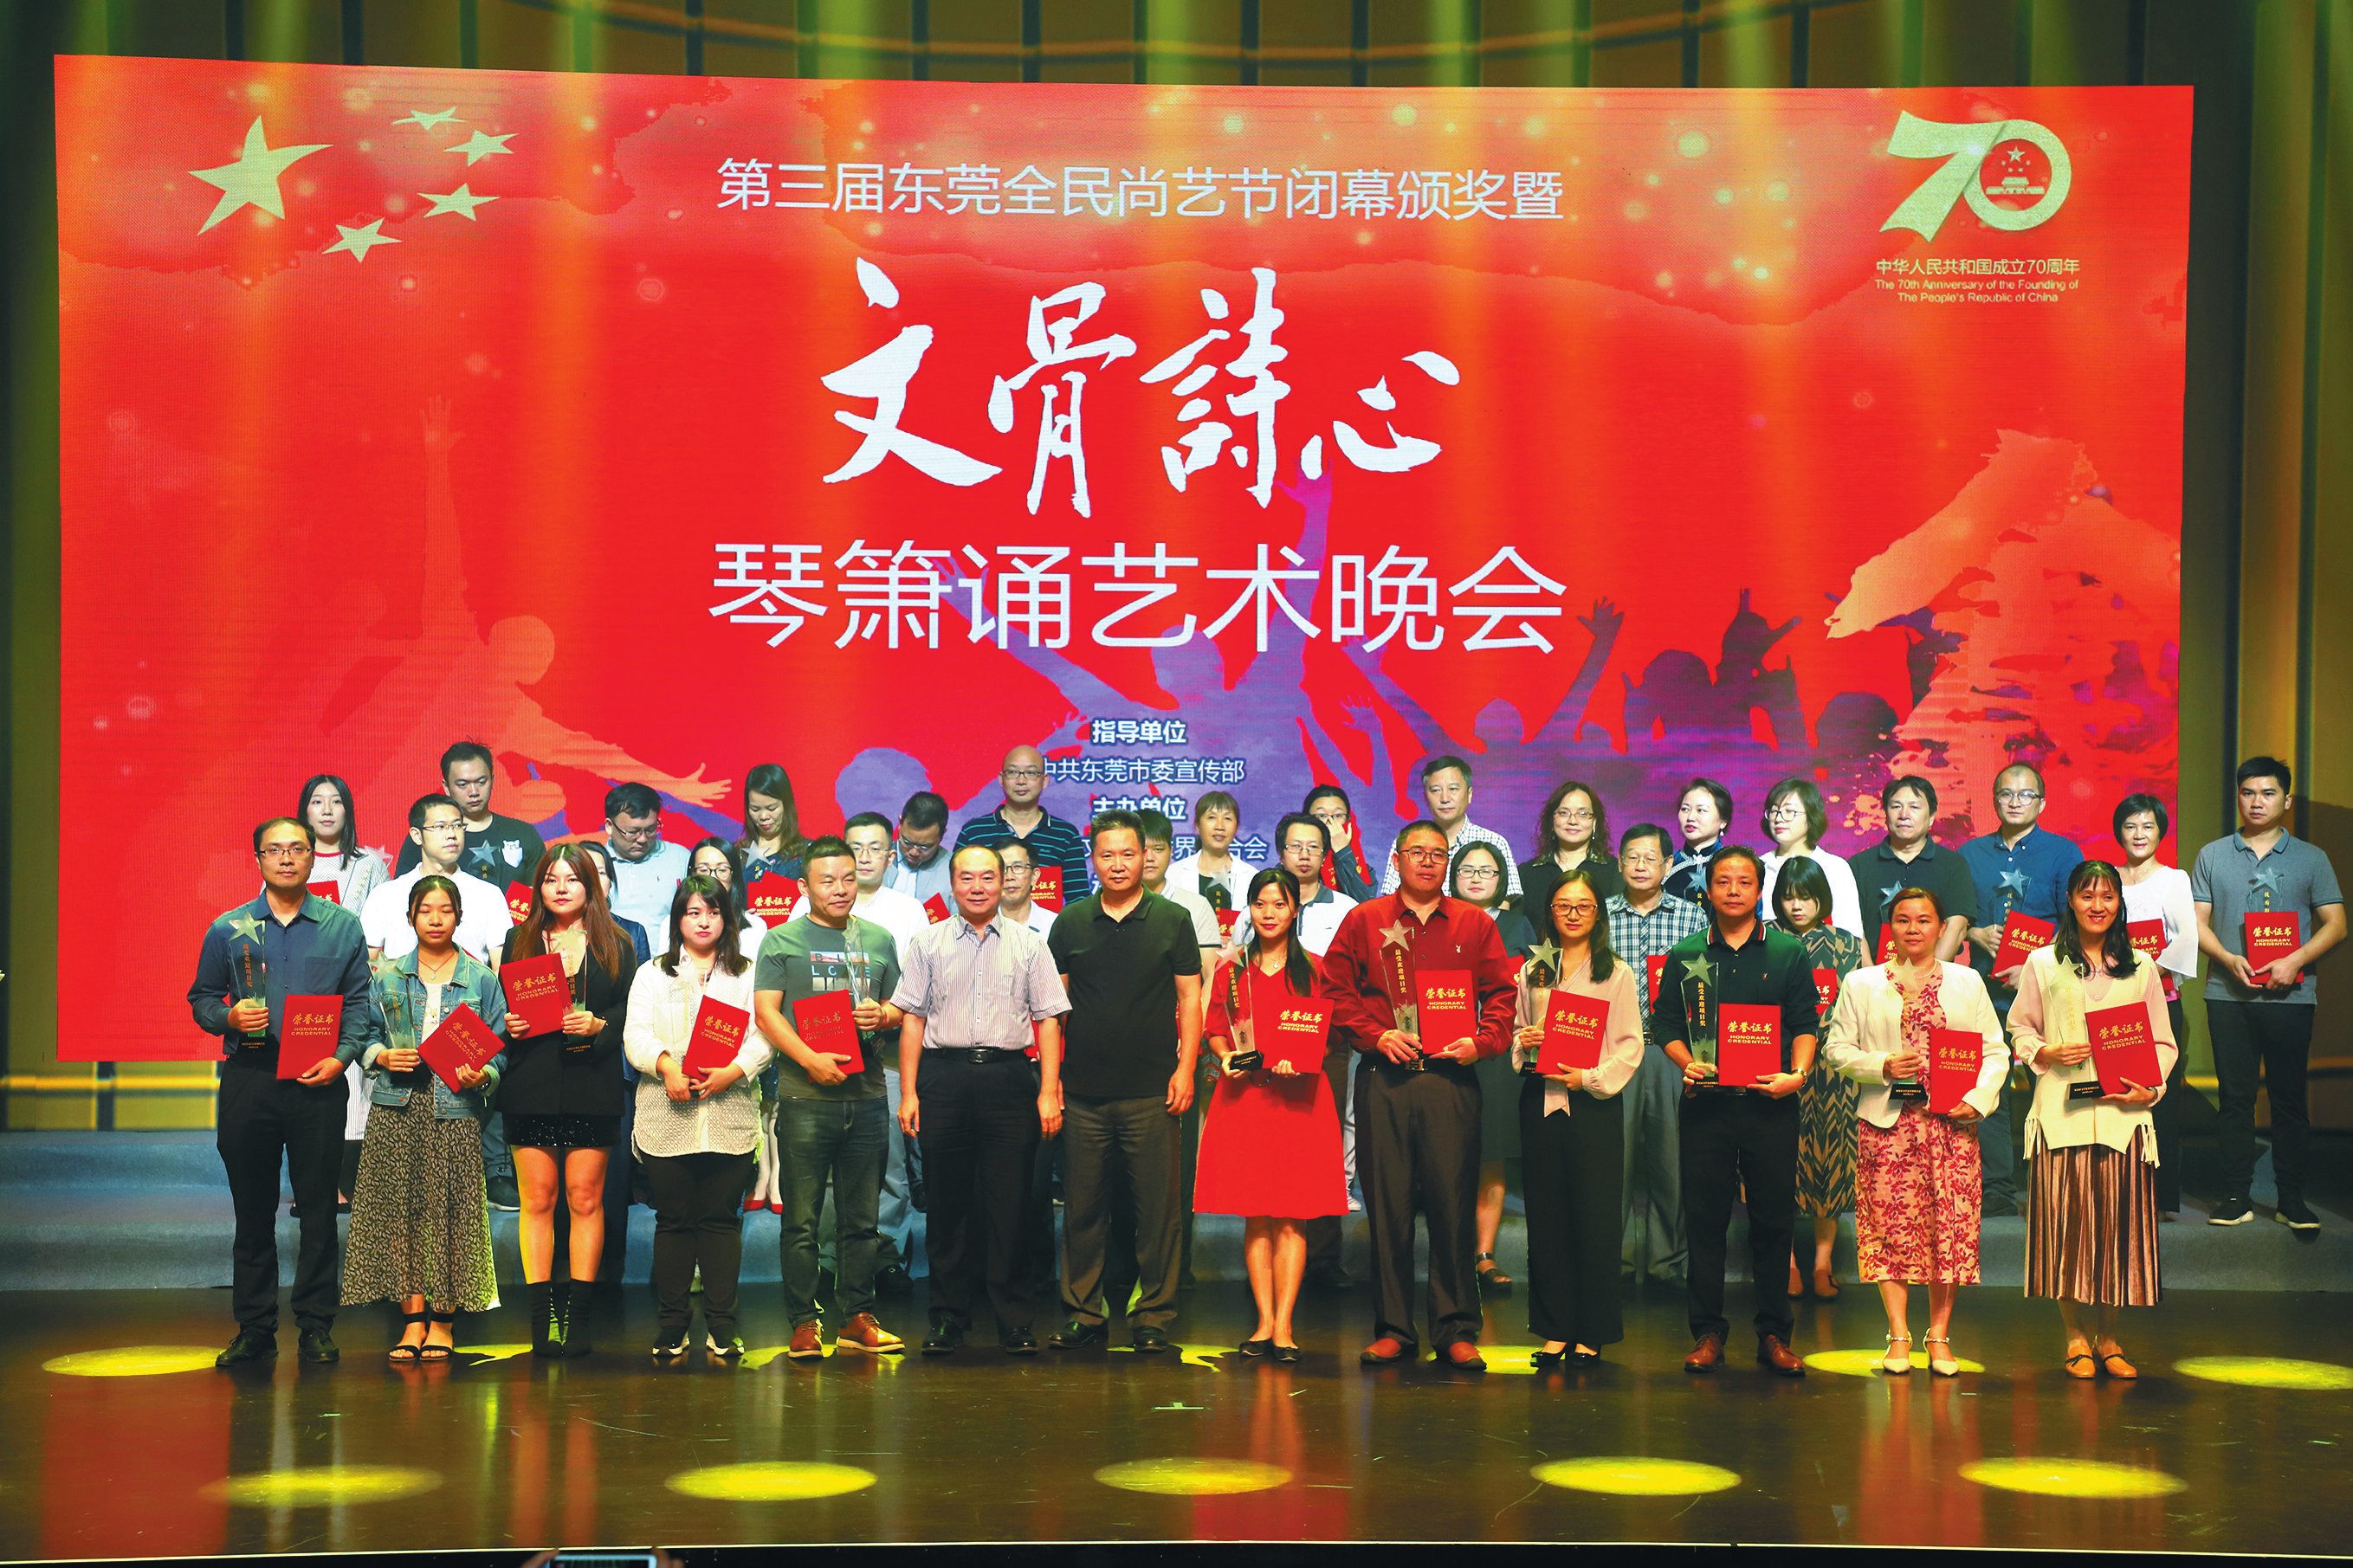 “礼赞新中国·唱响新时代”茶山镇庆祝新中国成立70周年群众歌咏会暨合唱比赛颁奖活动